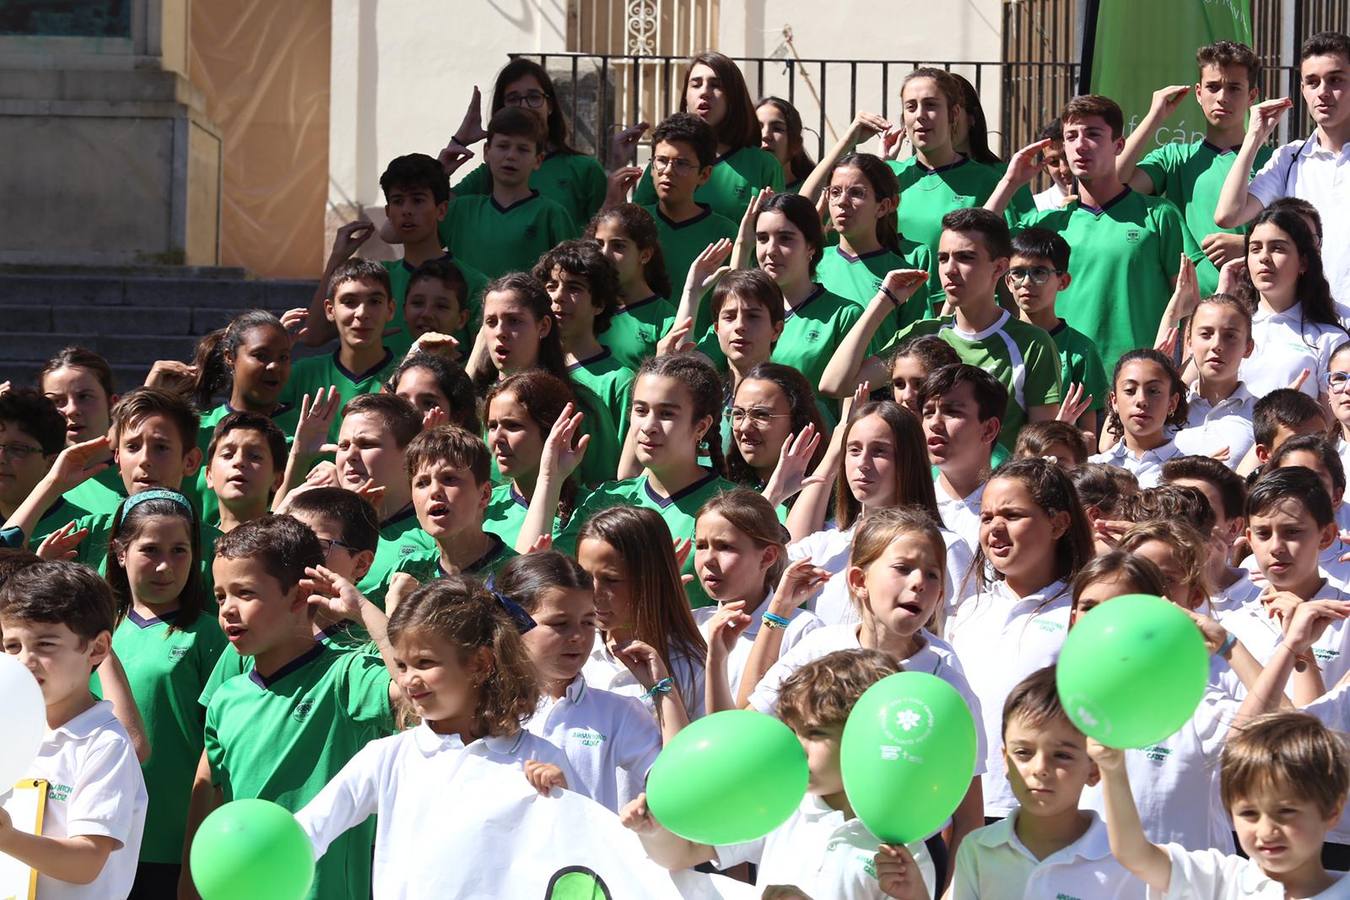 Cien alumnos de Argantonio cantan el himno de la AECC #unMinutoContraelCáncer